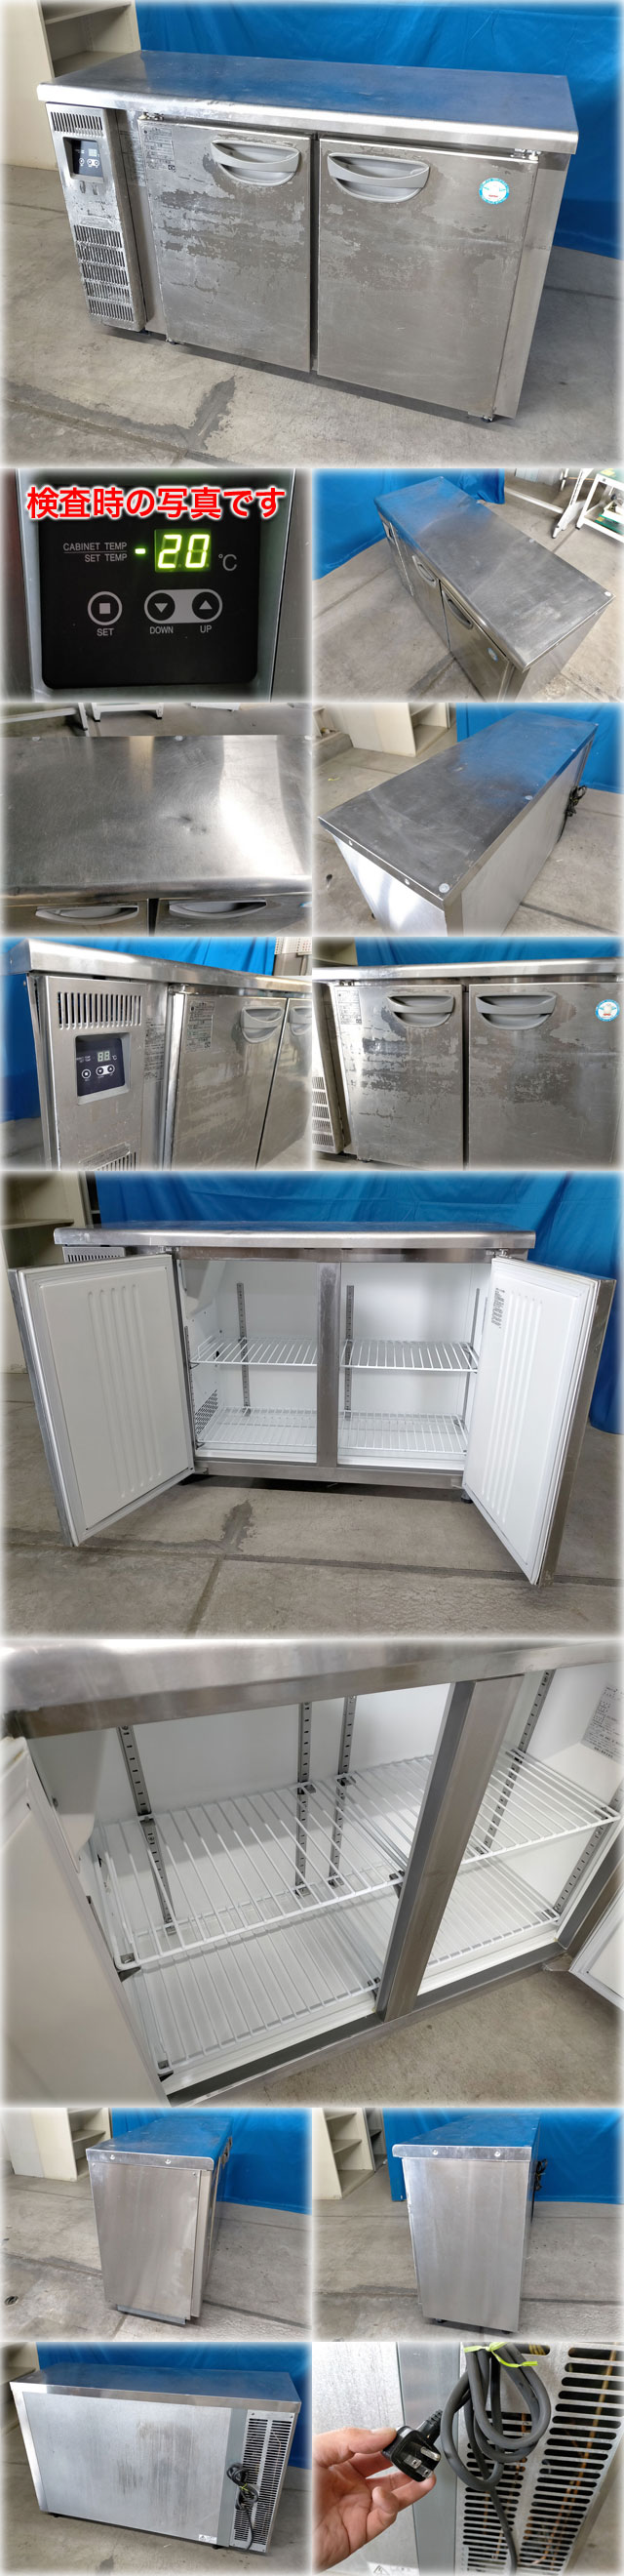 即納正規品フクシマ 冷凍コールドテーブル TMU-42FE2 1200x450x800mm 170L 超薄型 ヨコ型 台下冷凍庫 冷凍庫